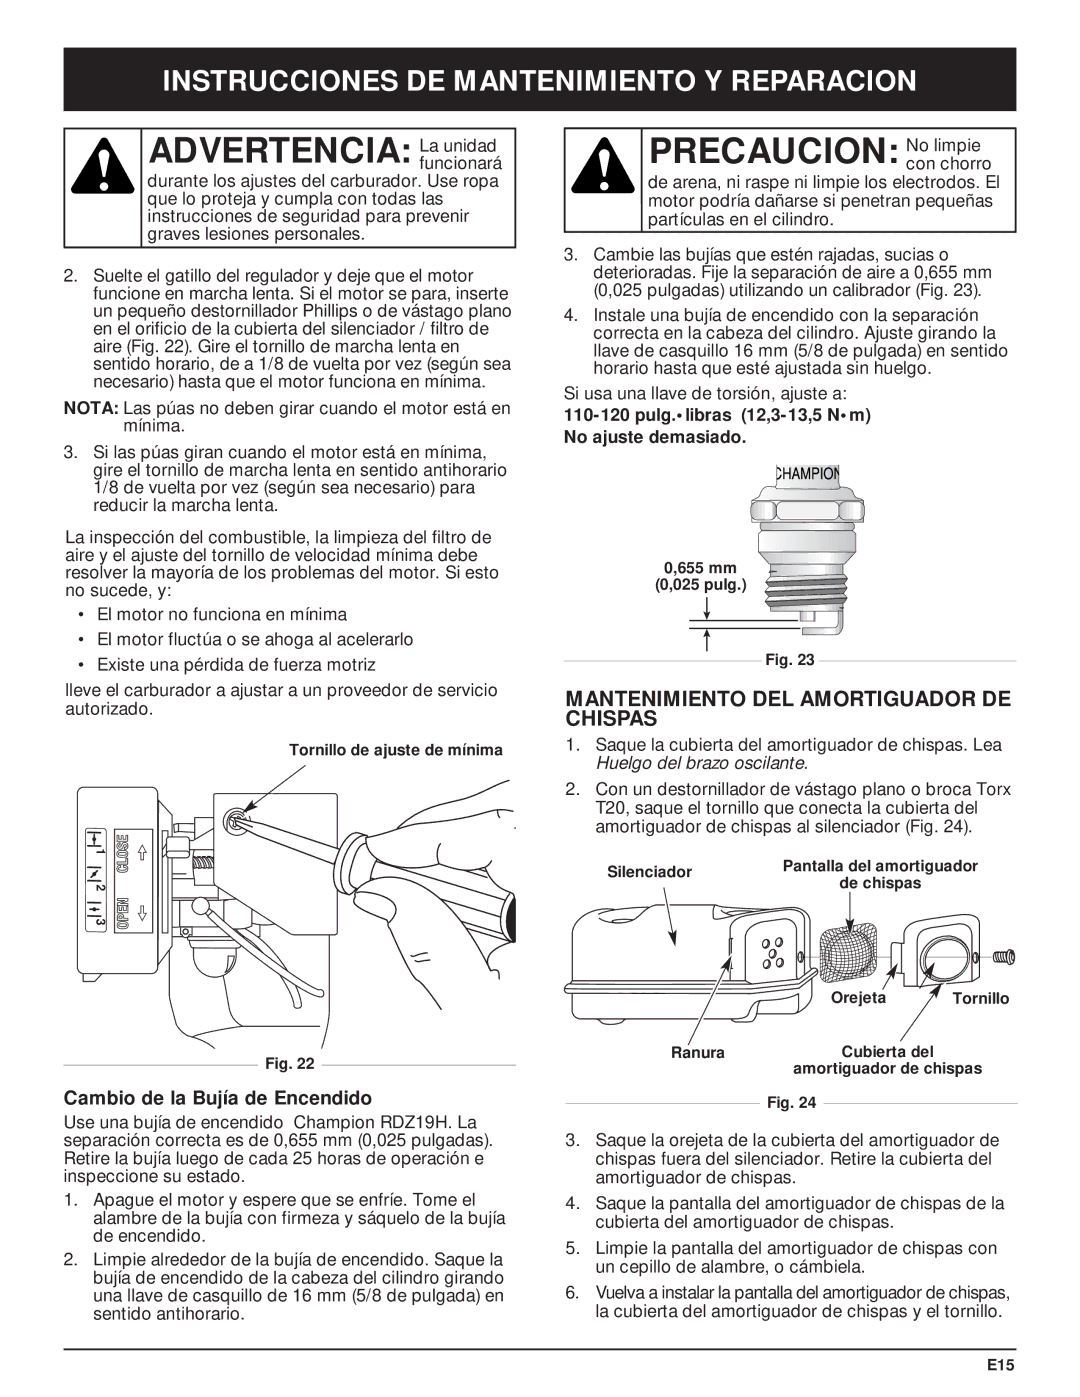 Craftsman 316.29271 manual Precaucion No limpie, Mantenimiento DEL Amortiguador DE Chispas, Cambio de la Bujía de Encendido 